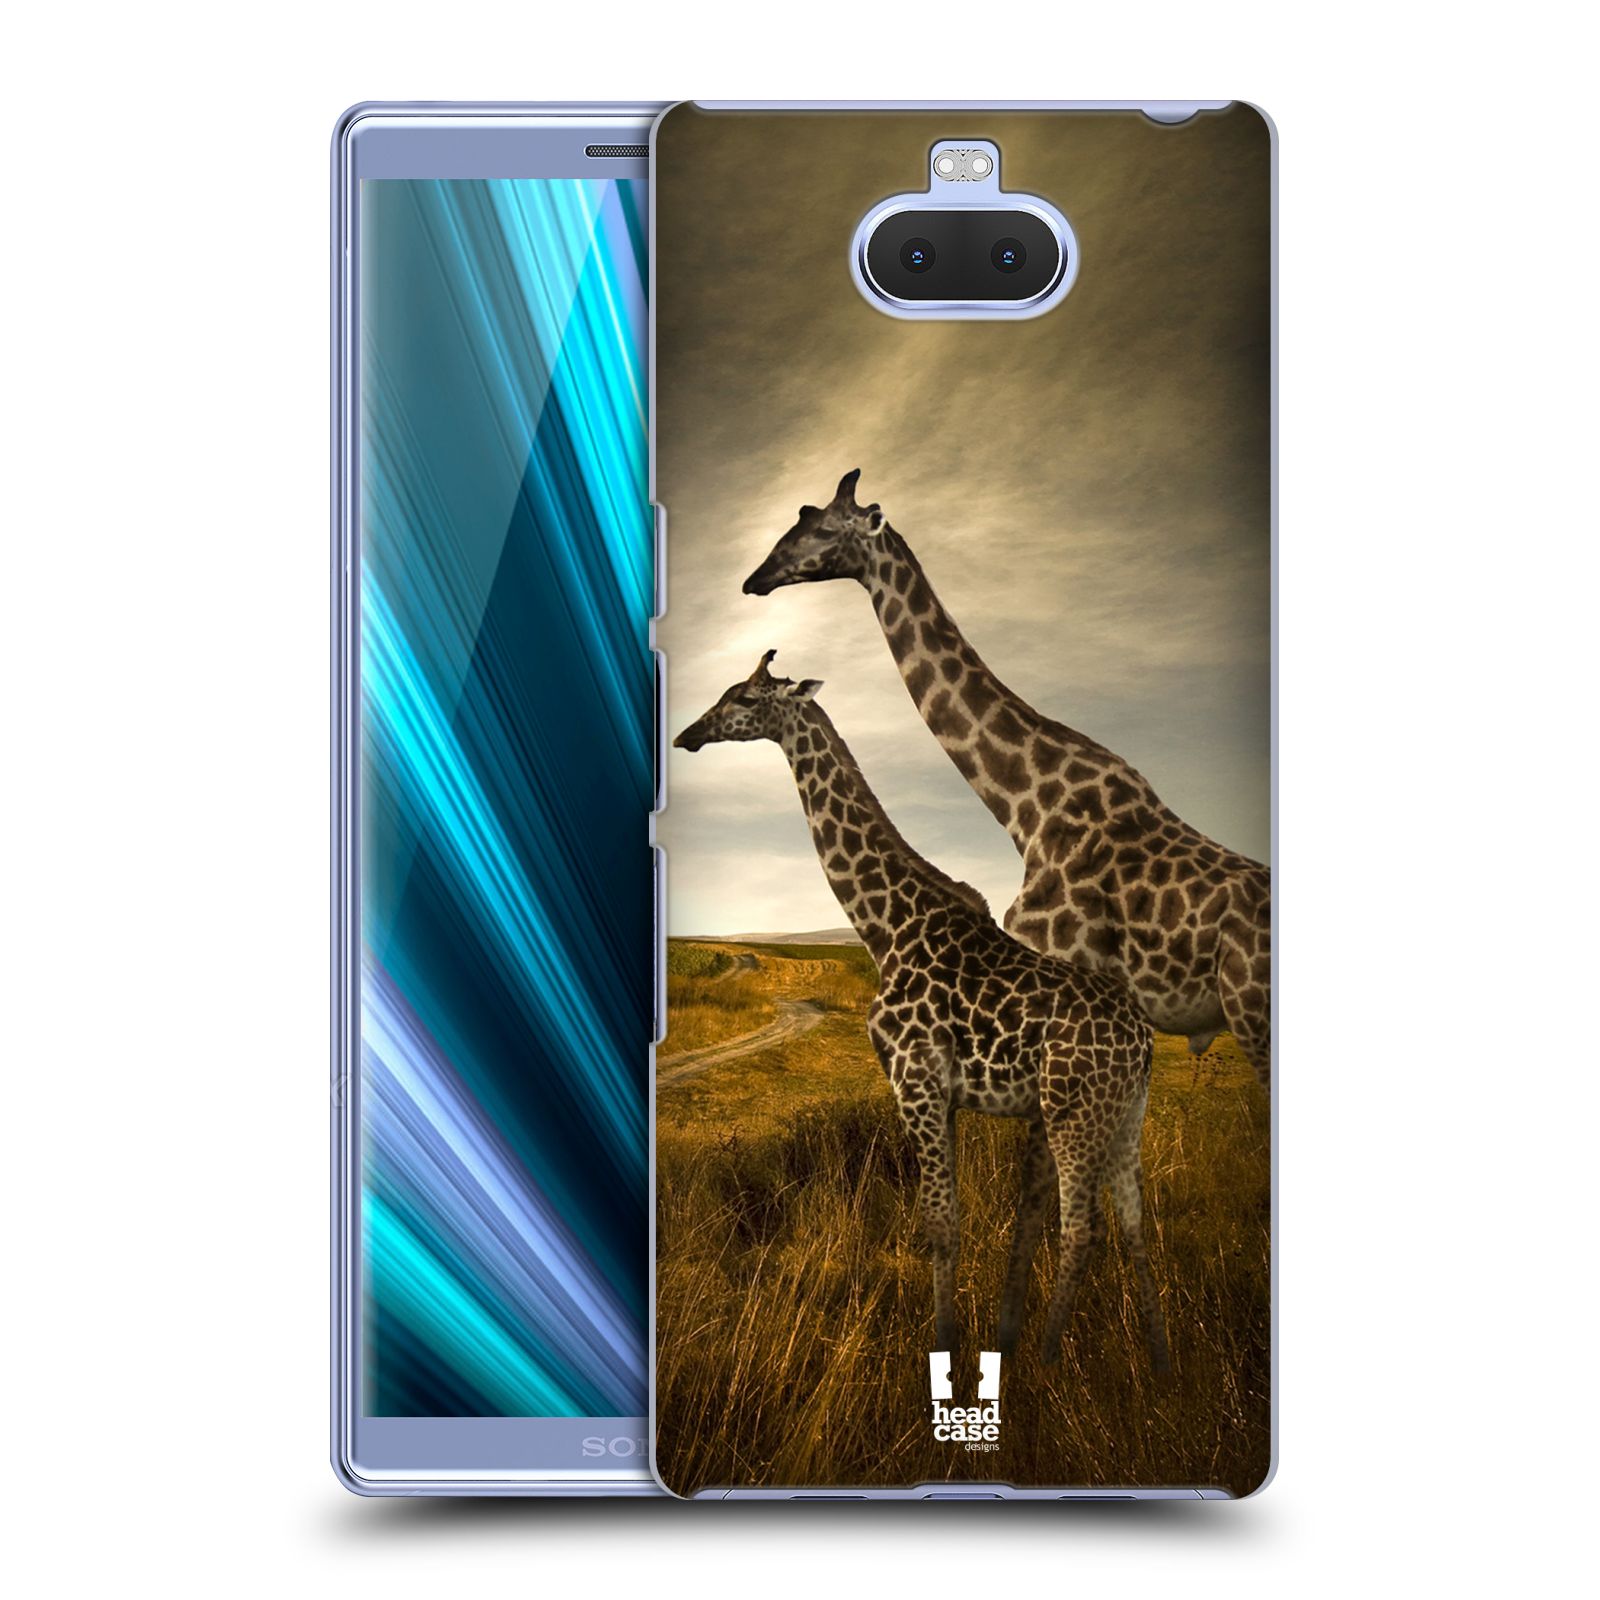 Zadní obal pro mobil Sony Xperia 10 - HEAD CASE - Svět zvířat žirafy